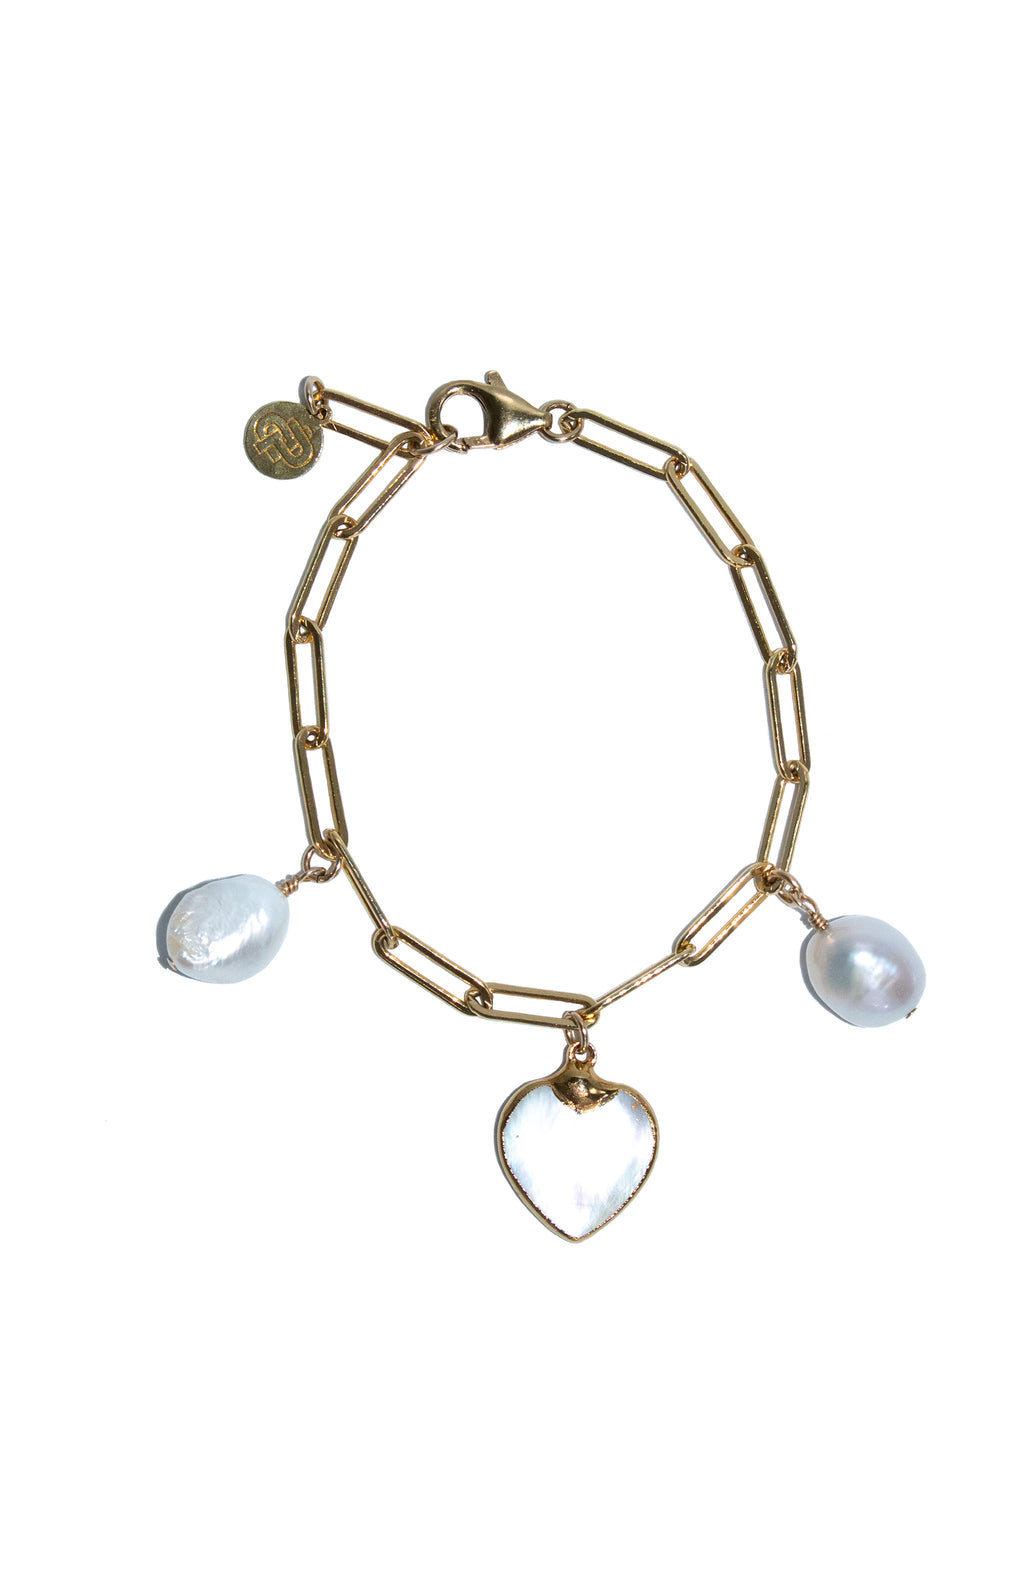 Pearl Heart Charm Bracelet